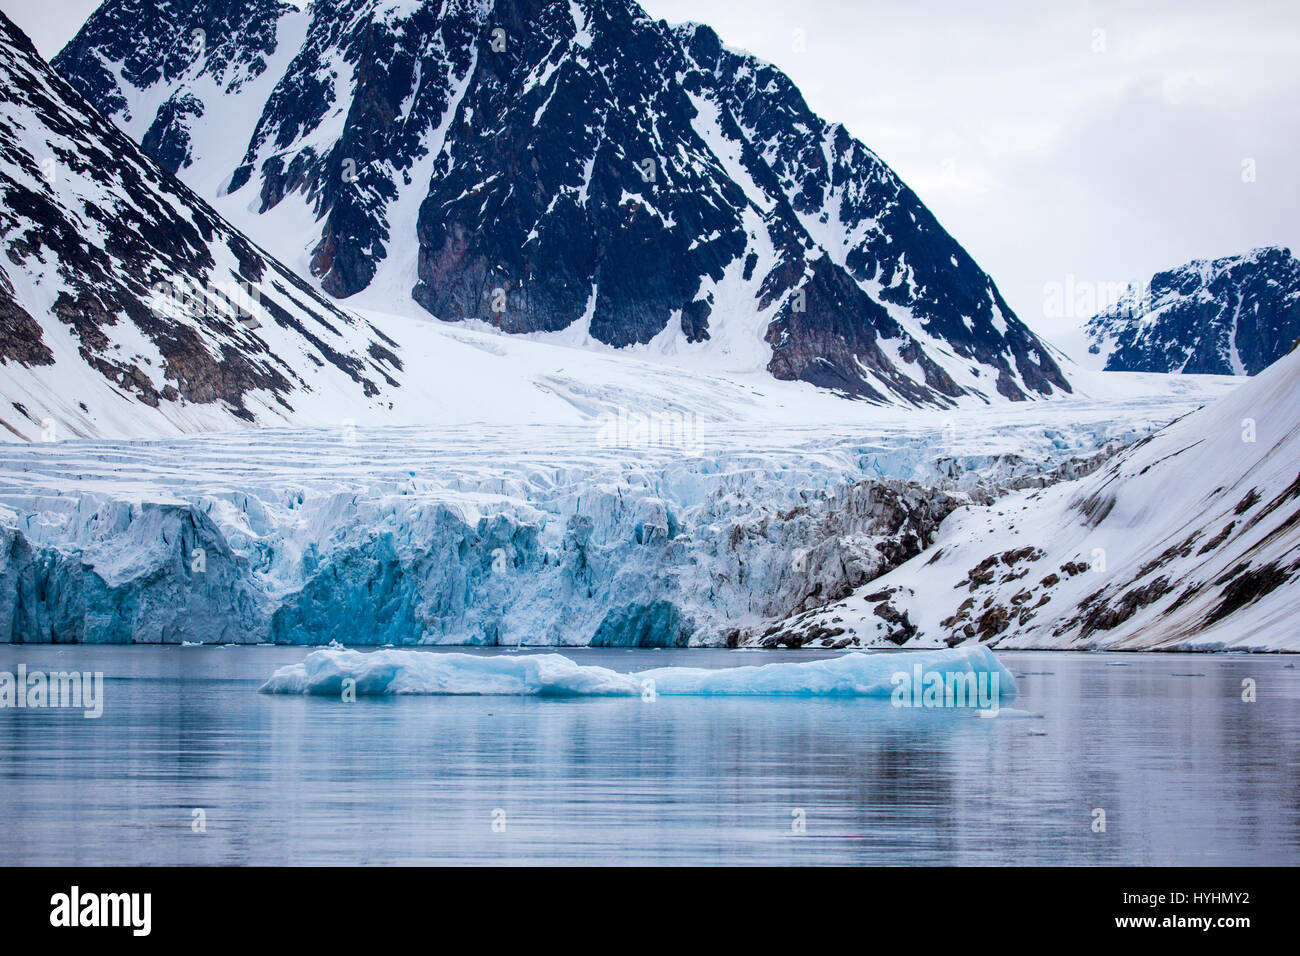 Waggonwaybreen, ein Ausgabe-Gletscher in Magdalenefjorden, einem 8km langen, 5km breiten Fjord an der Westküste von Spitzbergen in der Arktis Archip debouching Stockfoto